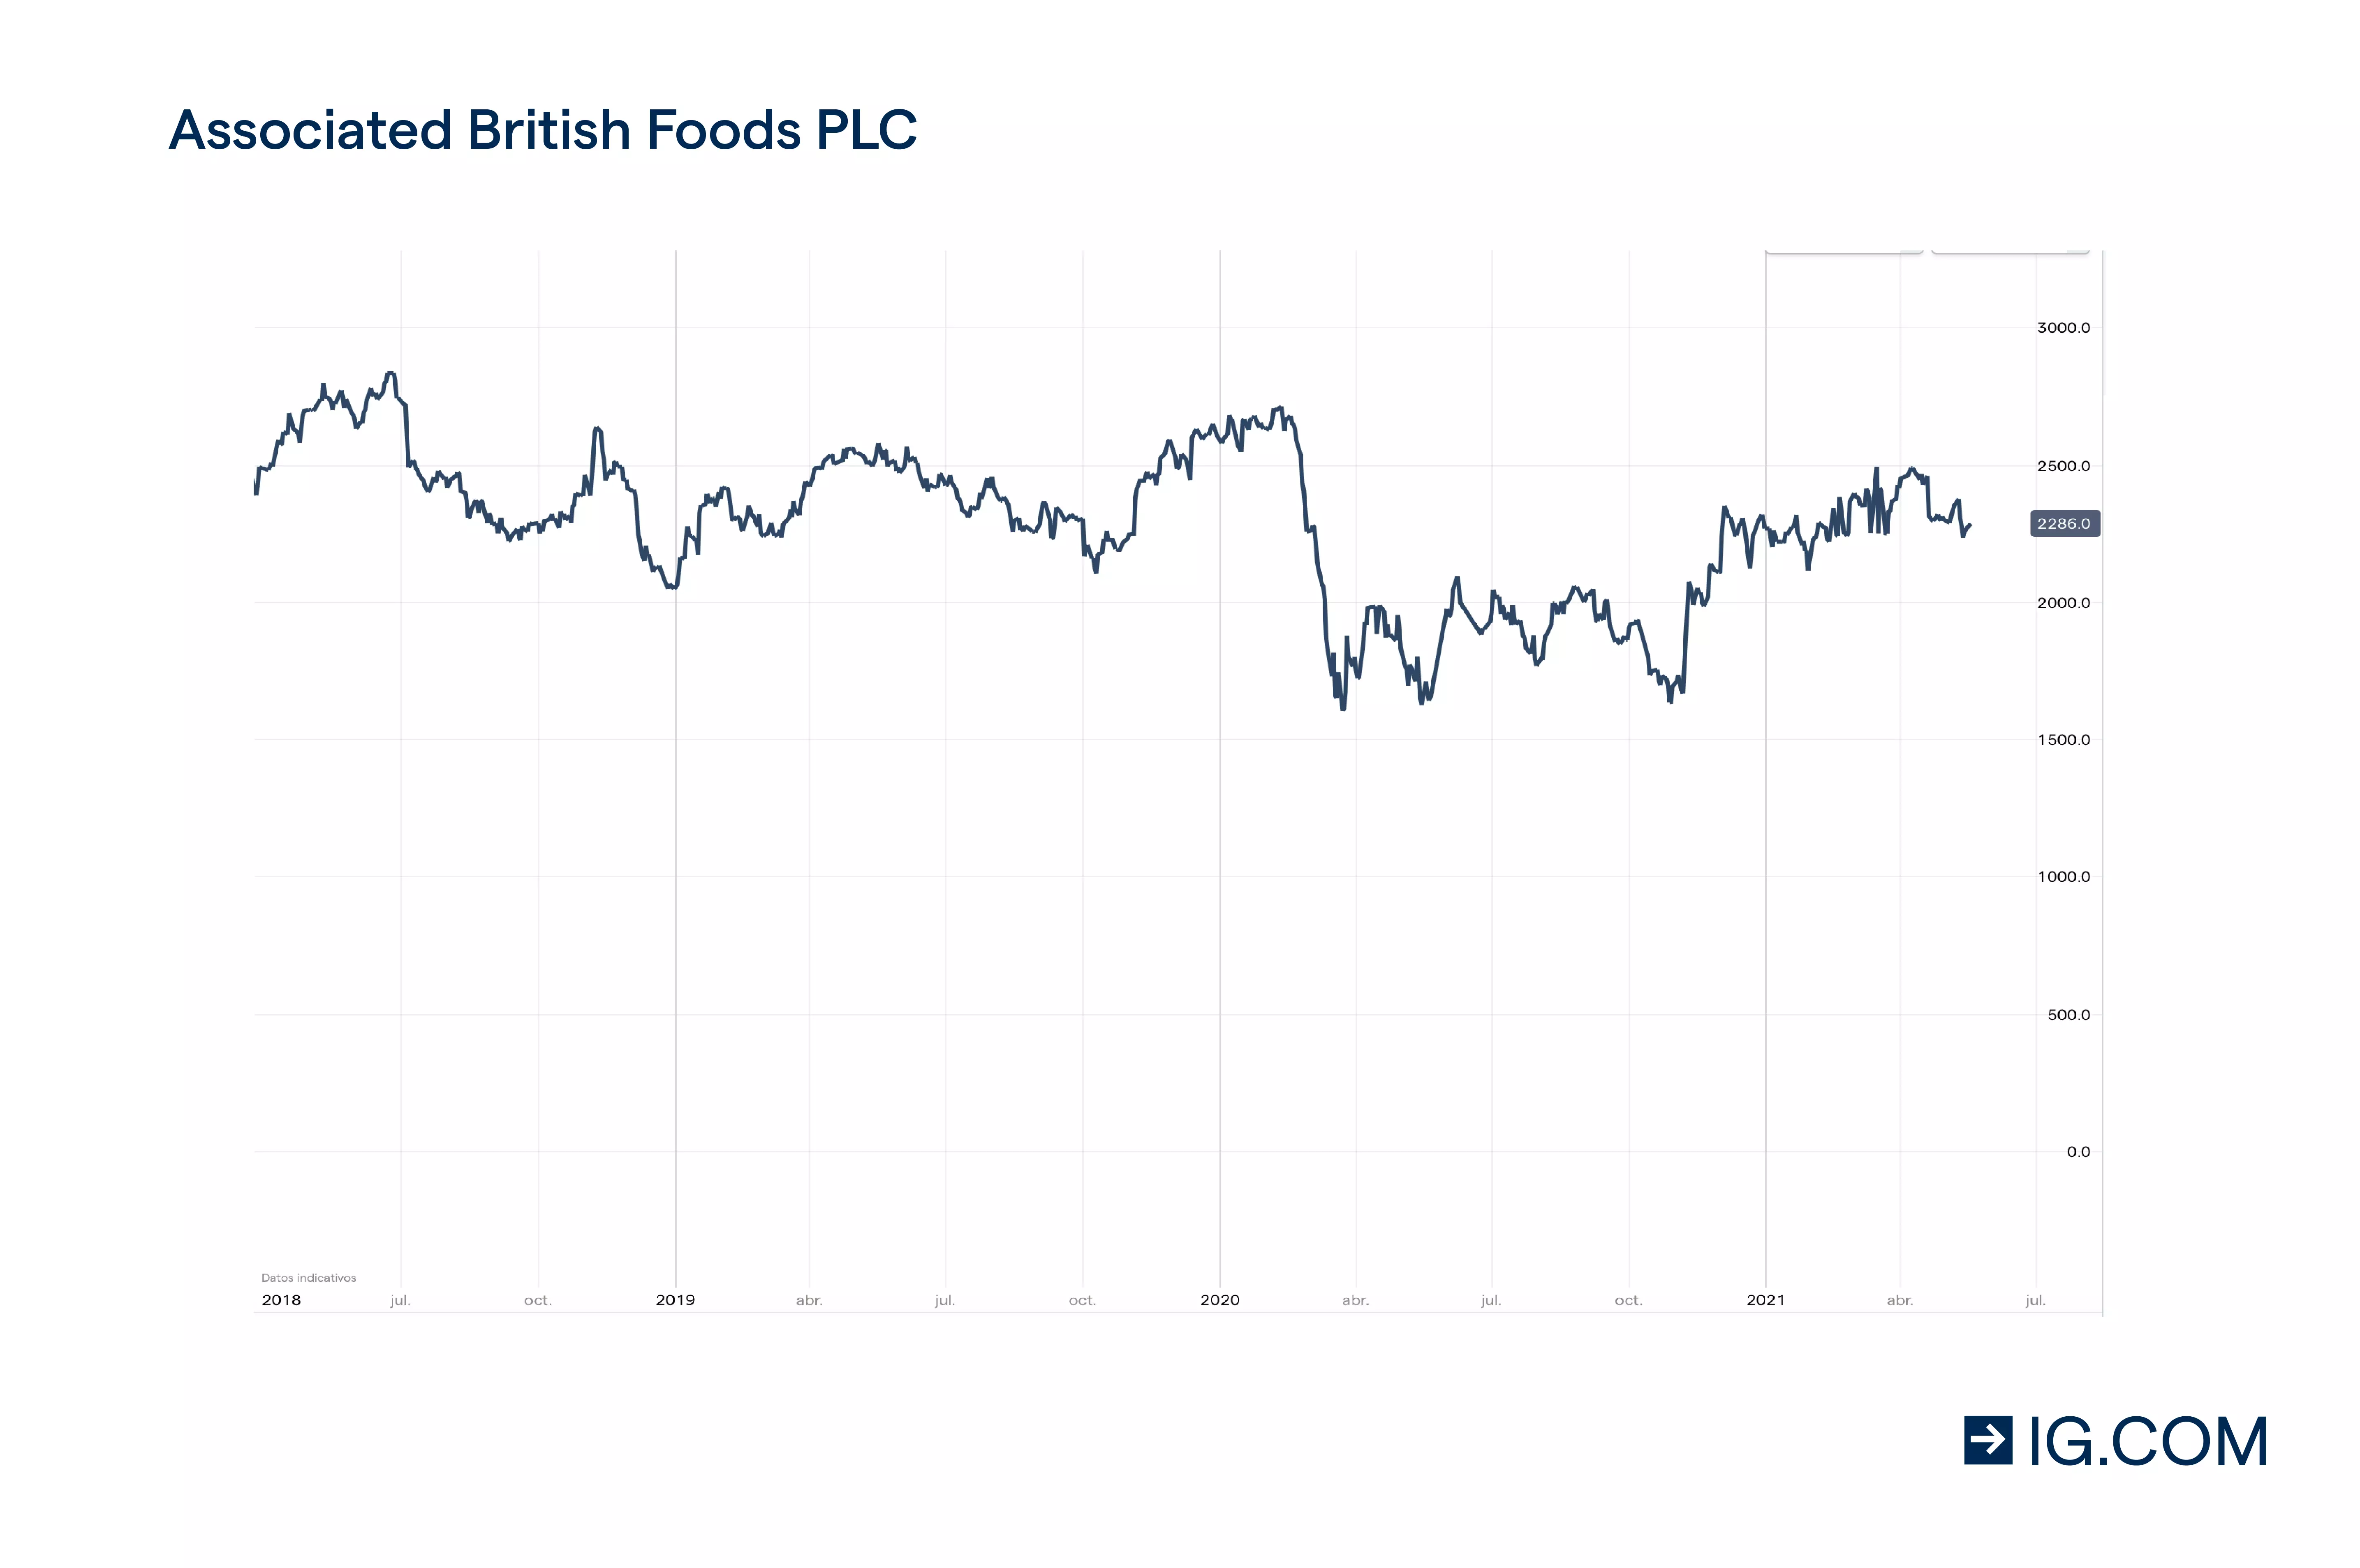 Gráfico de precios acciones de cannabis Associated British Foods